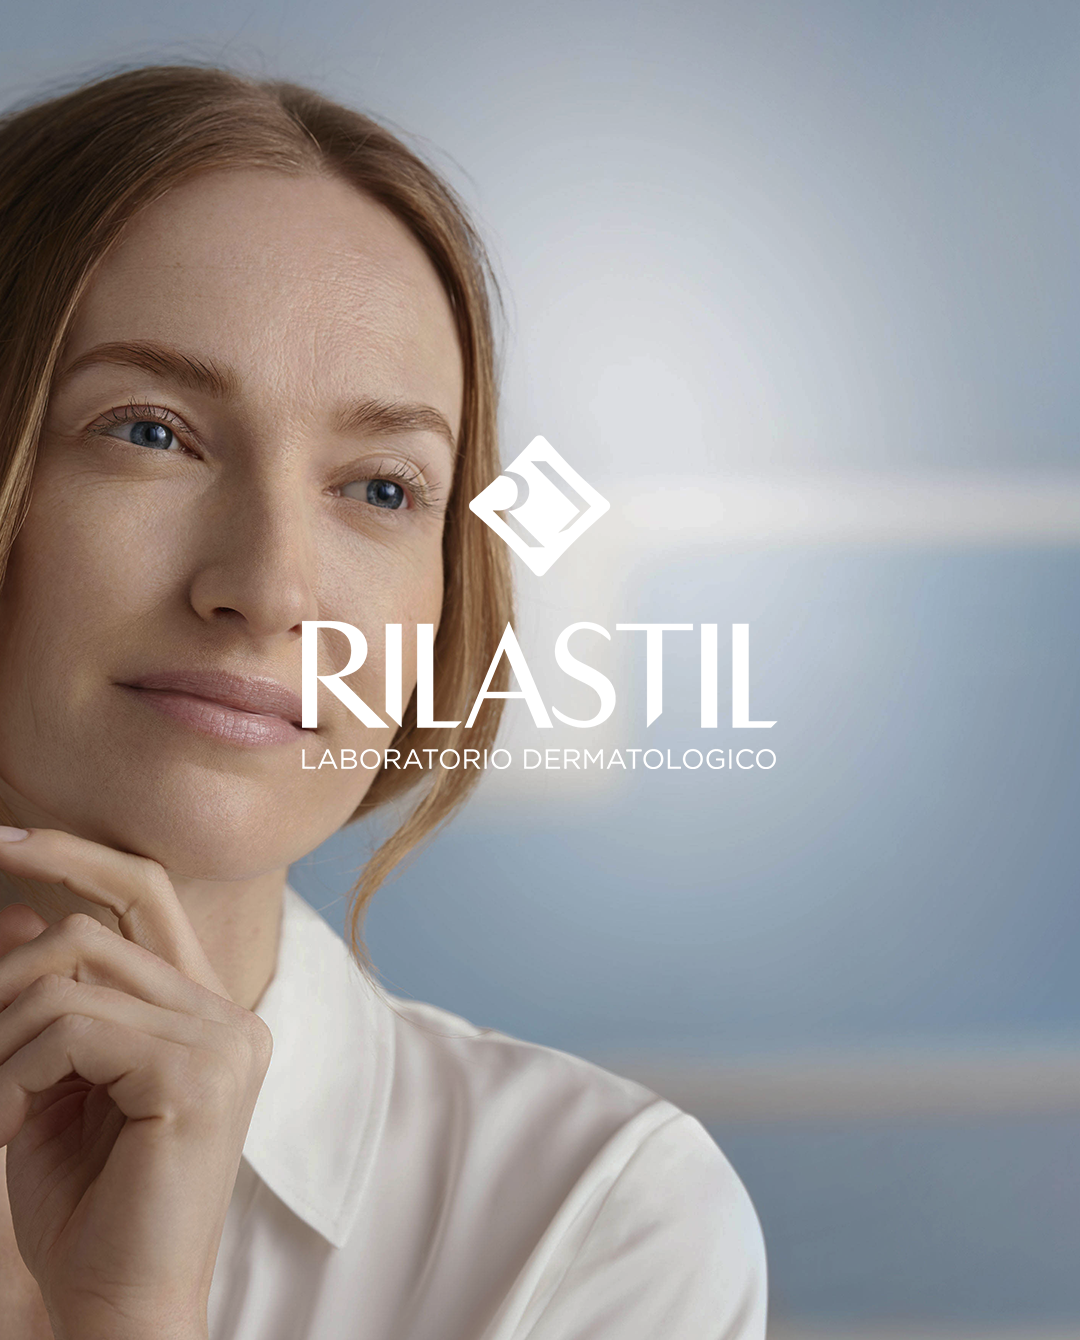 RILASTIL-1080x1340-1